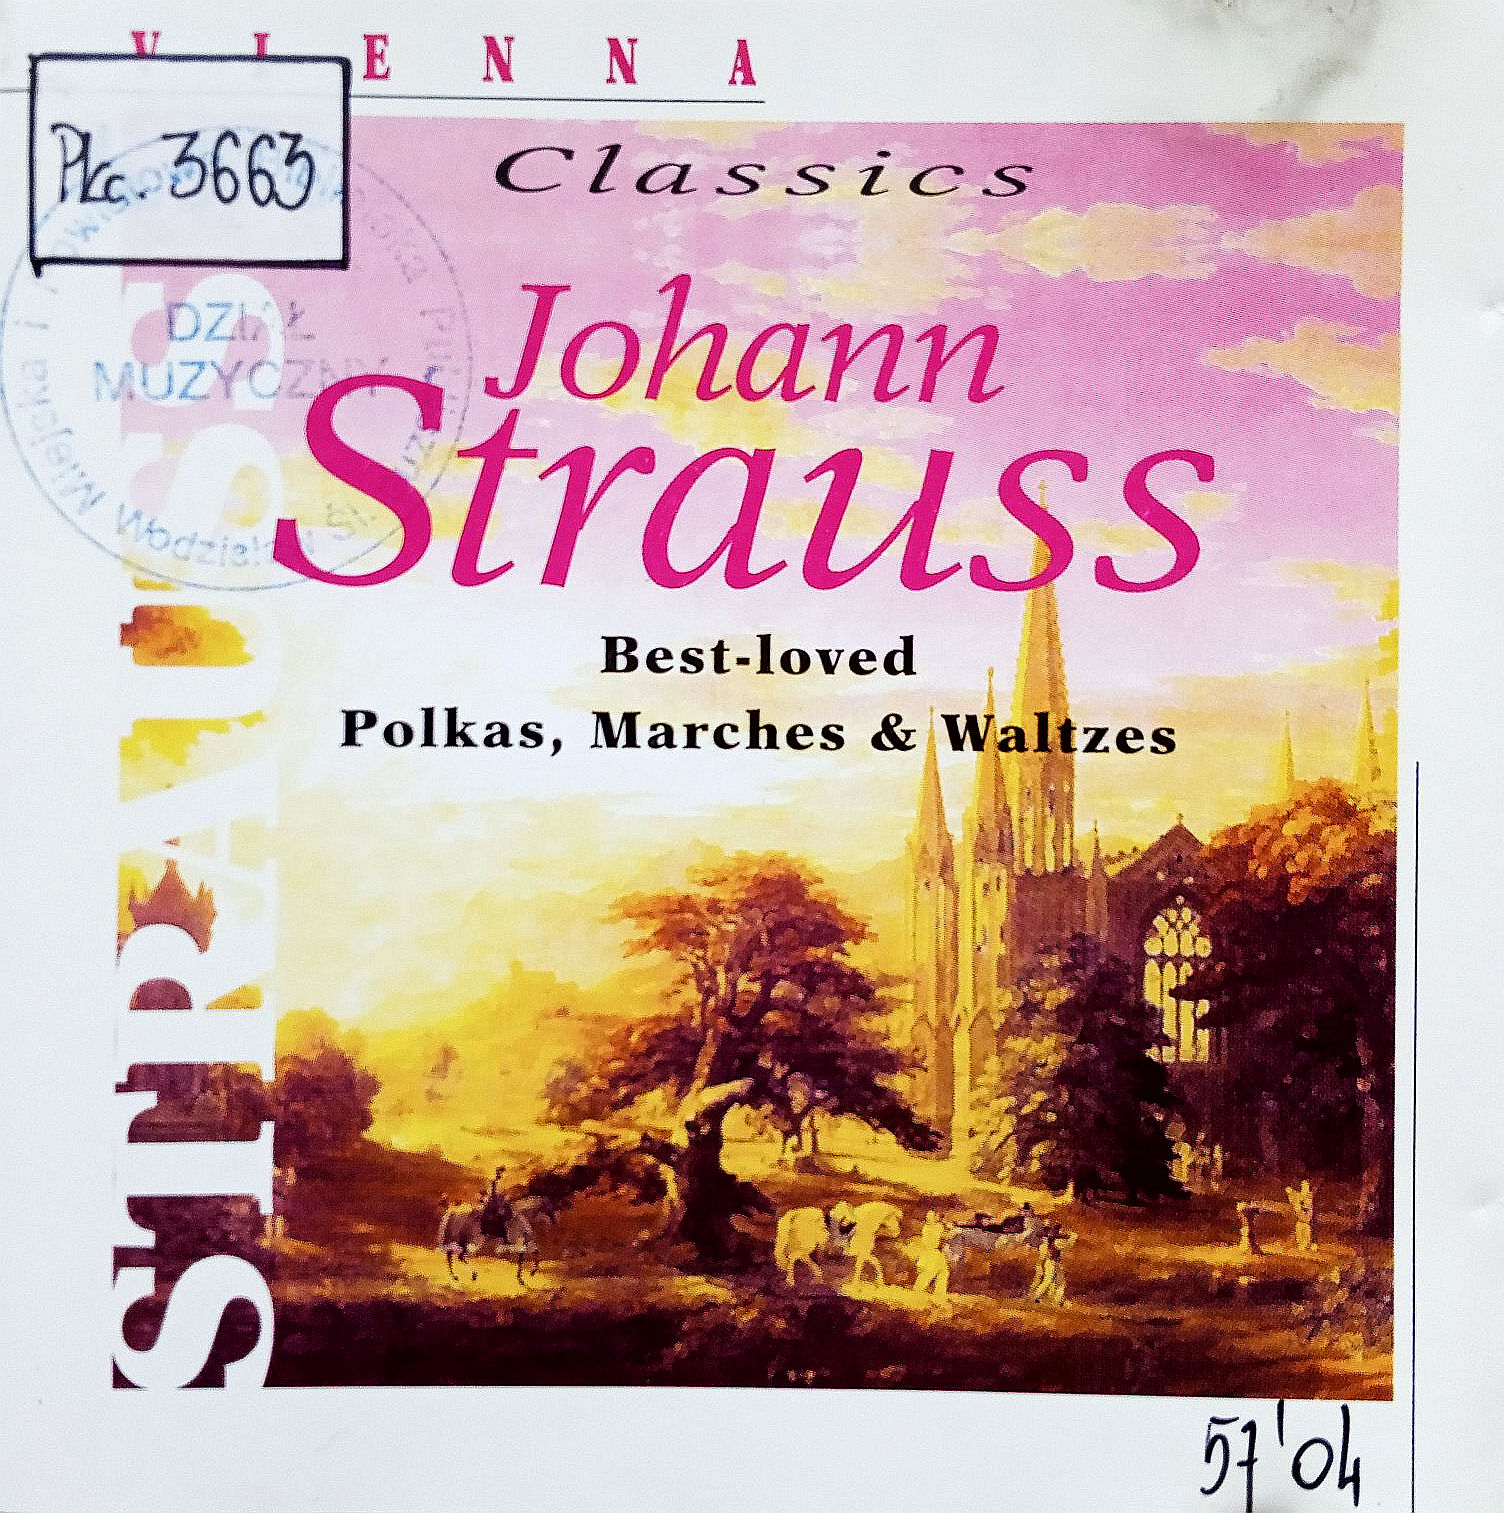 STRAUSS JOHANN - Best-loved Polkas, Marches & Waltzes